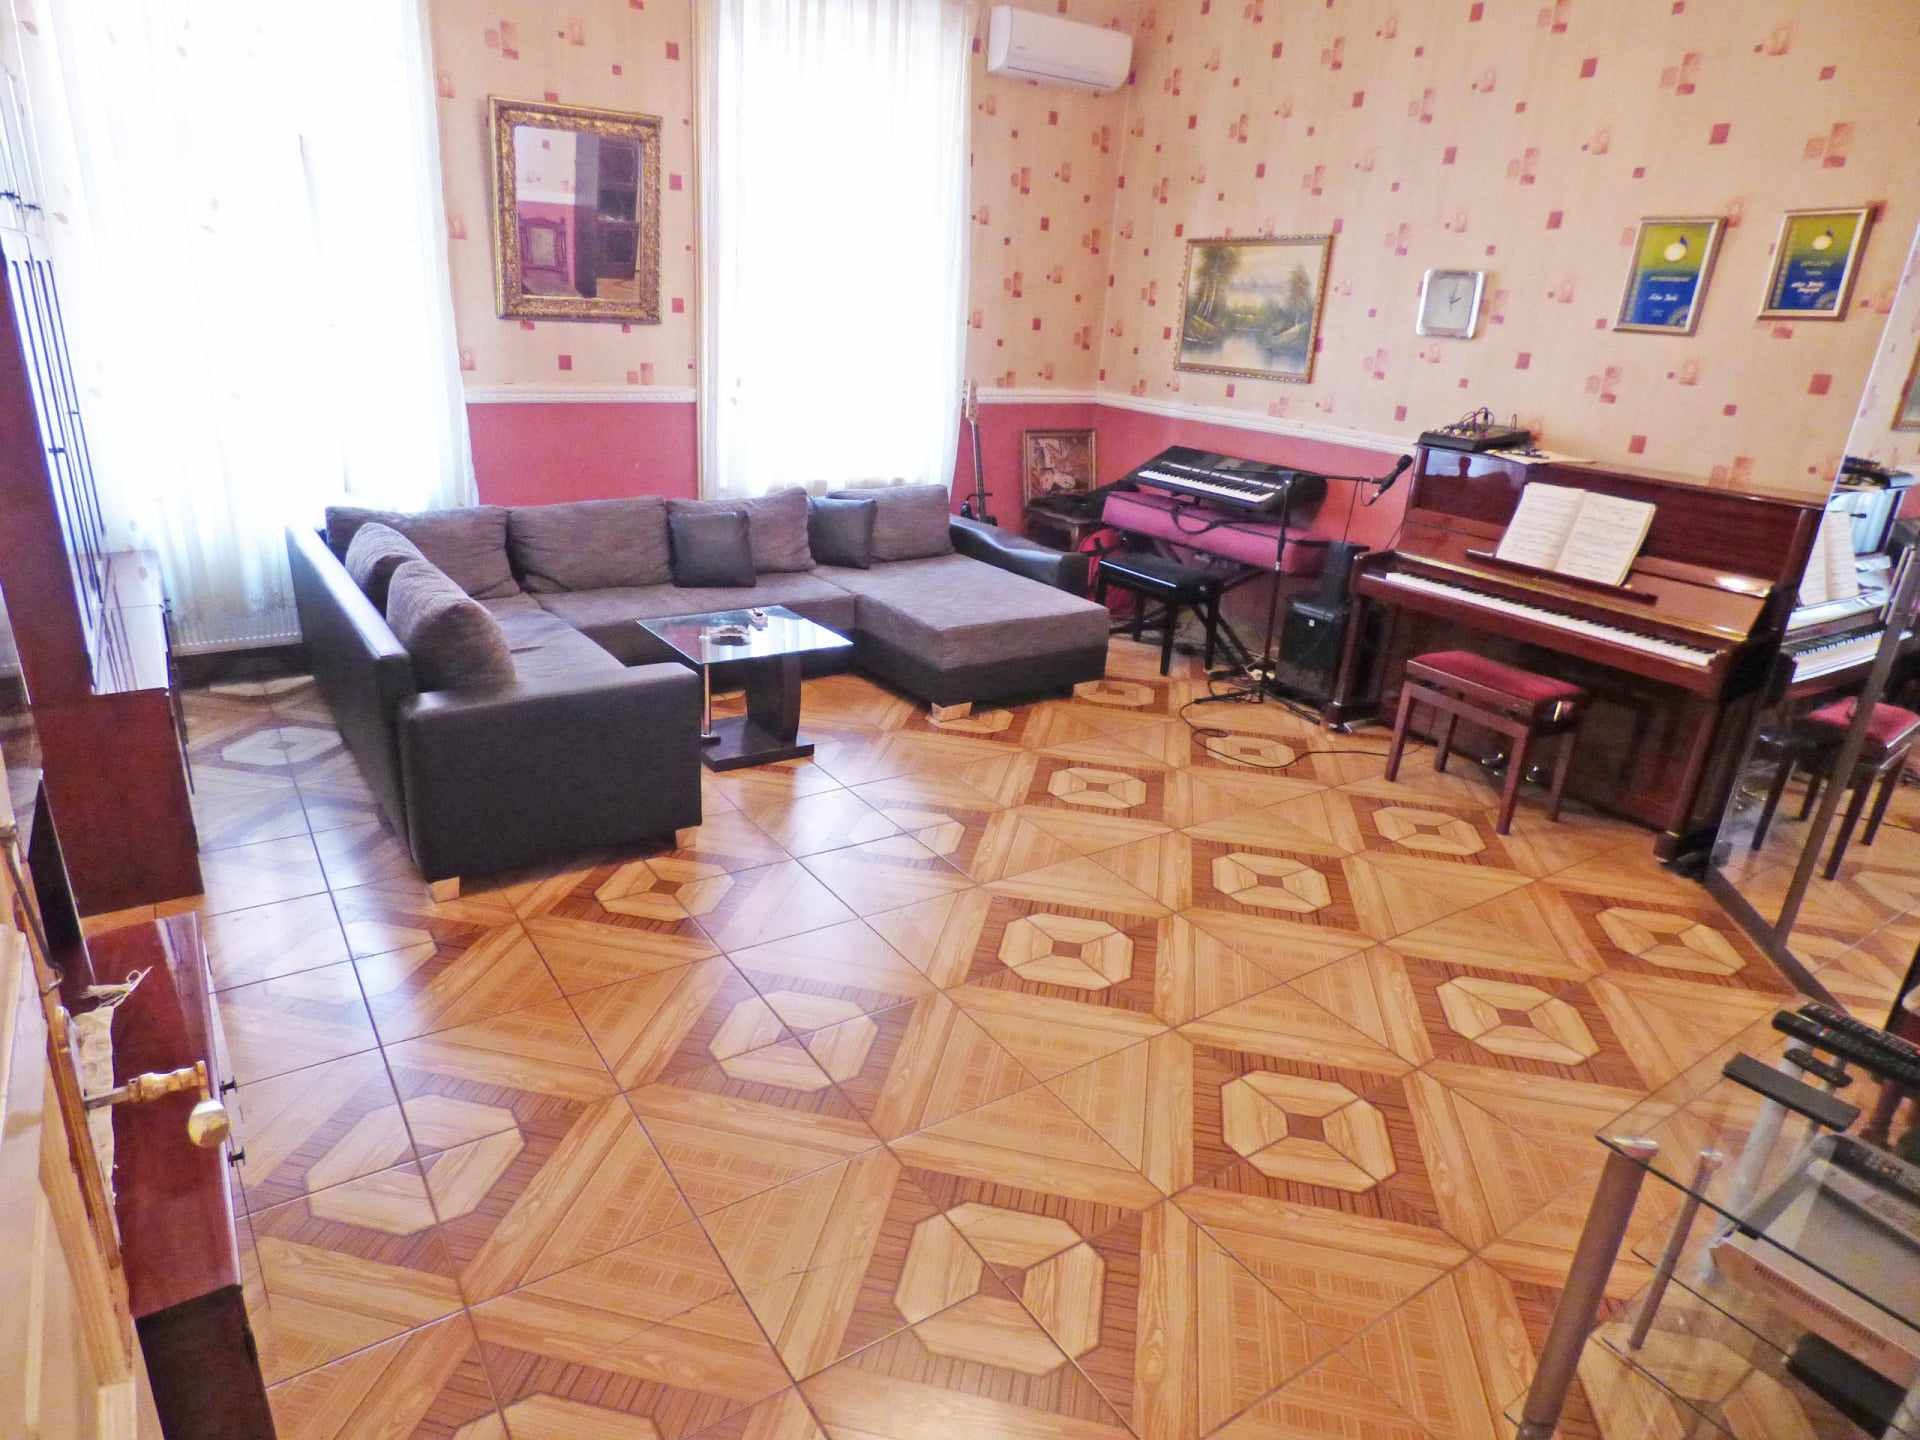 Eladó Budapesten a Magdolna negyedben tégla építésű 3 szobás lakás